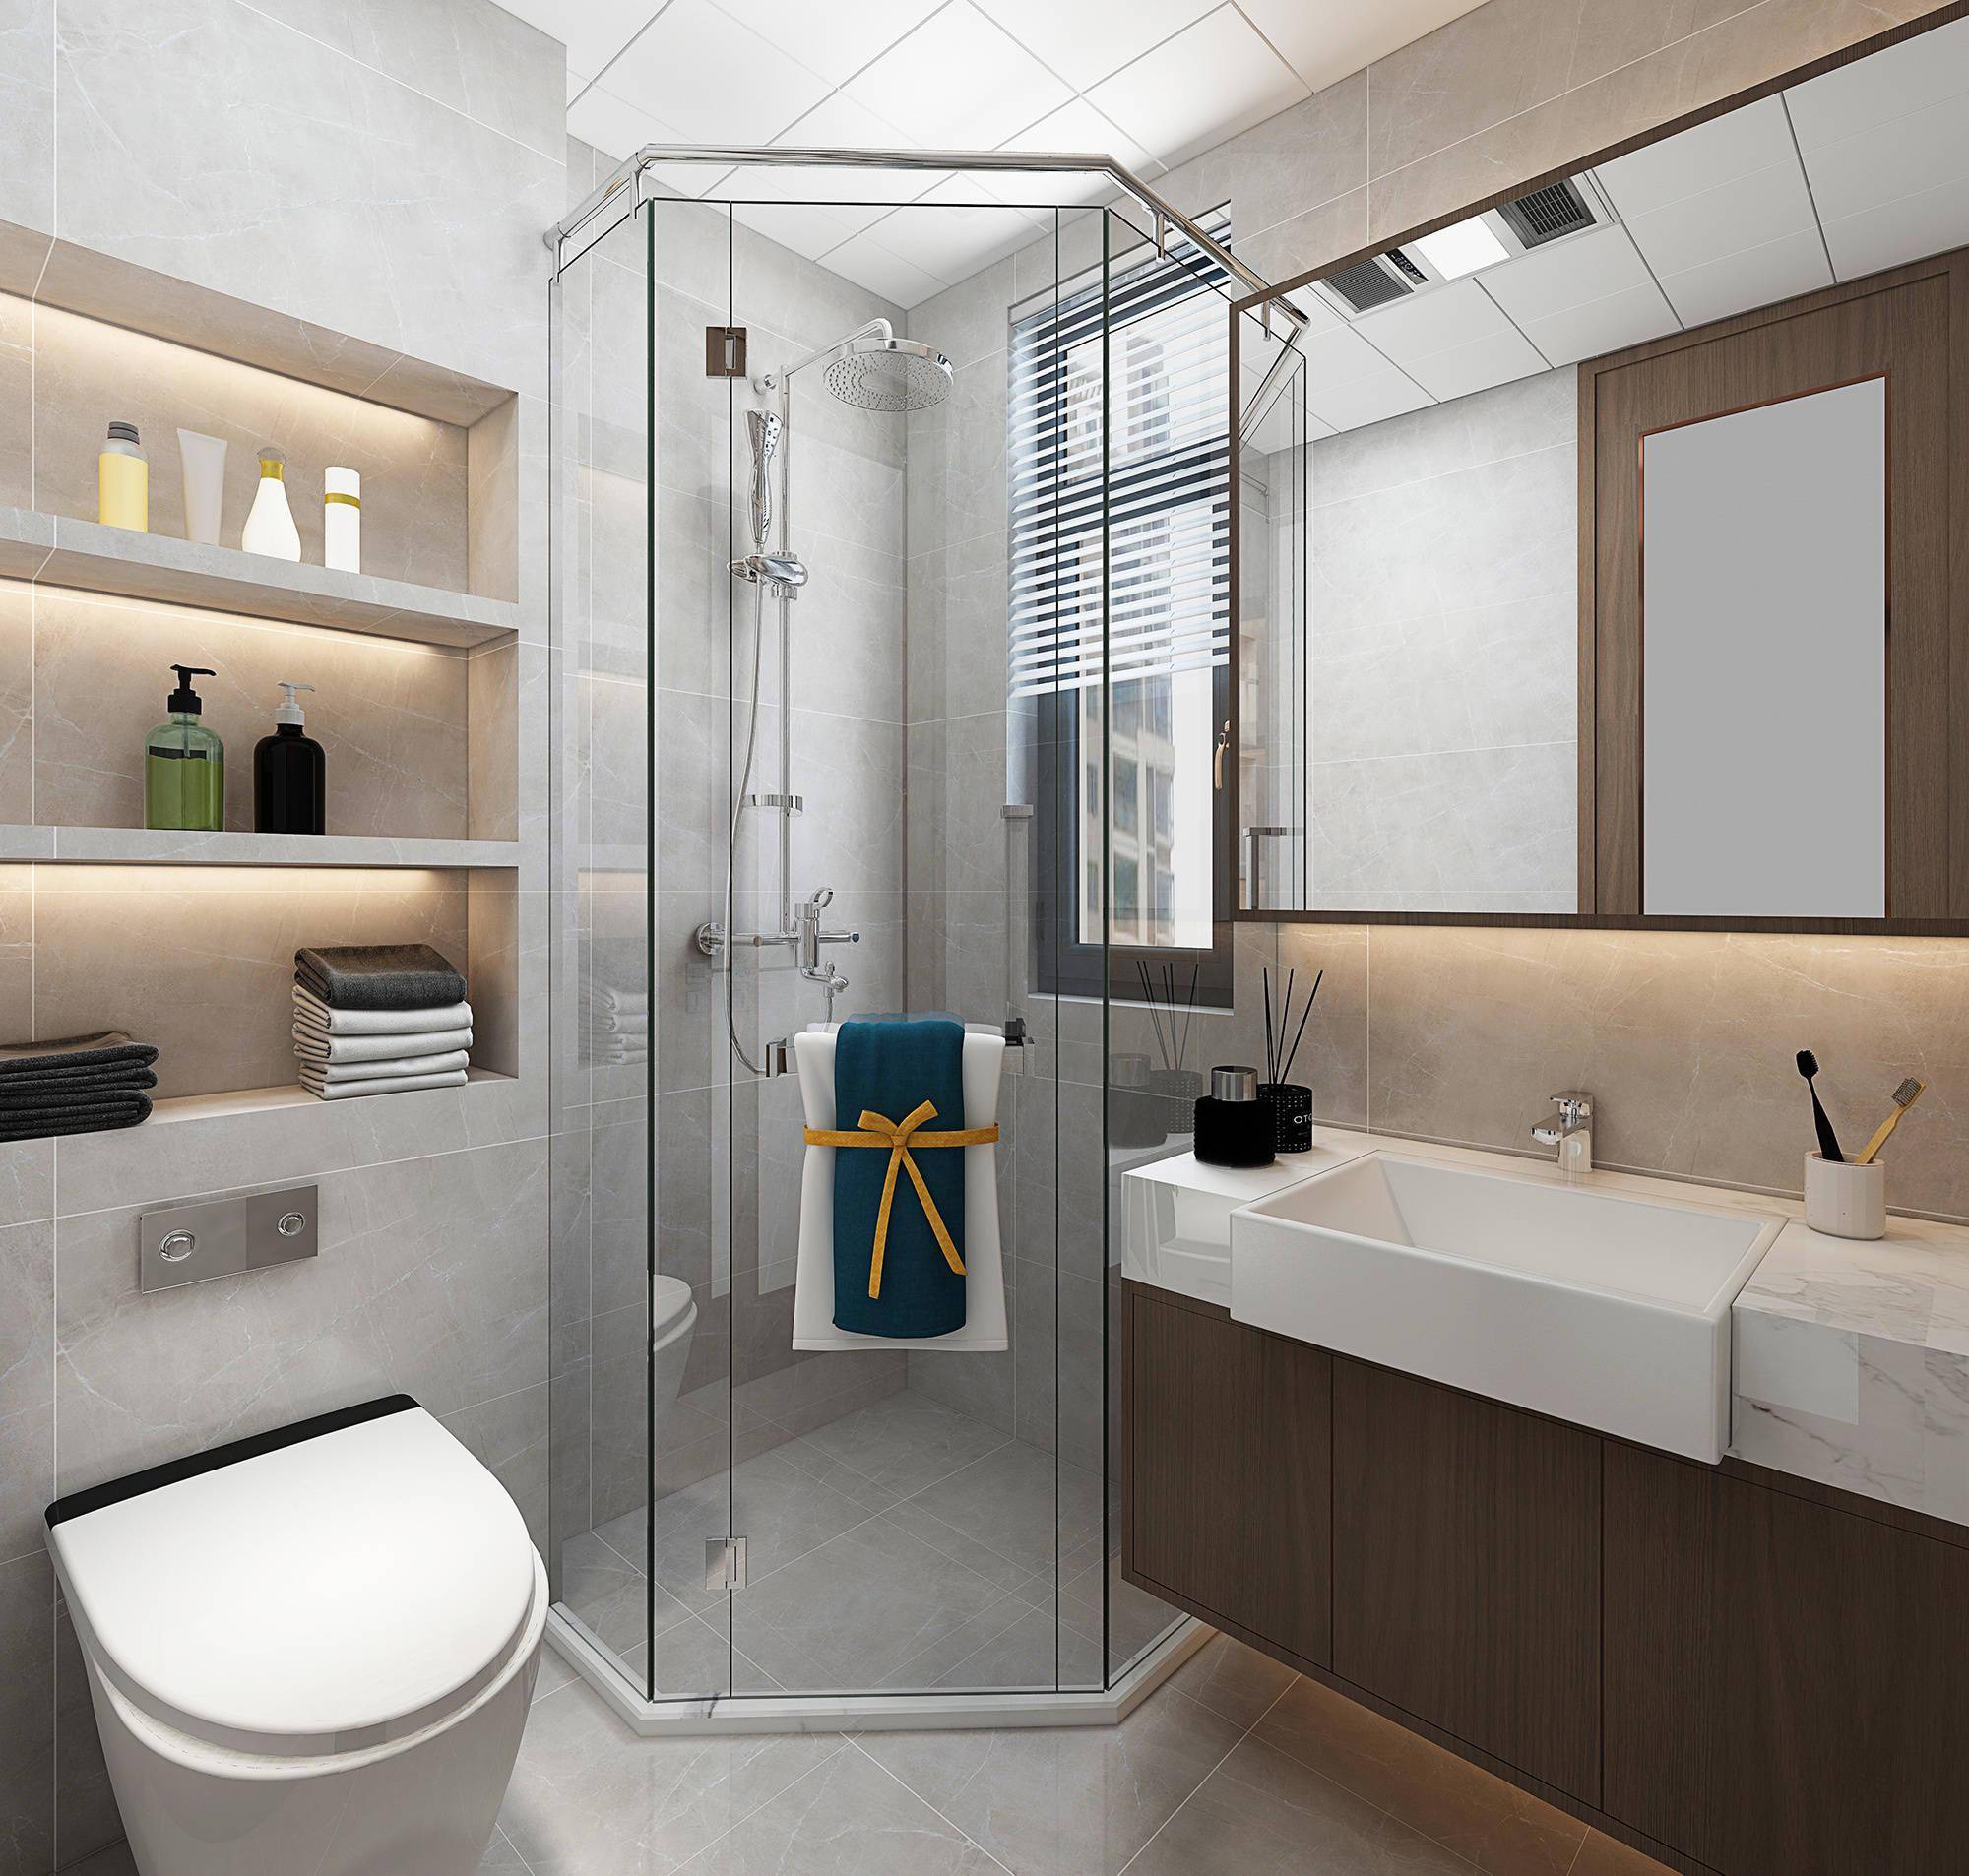 次卫-干湿分离定制淋浴房使用更加方便,挂便器改造及砌筑壁龛合理利用